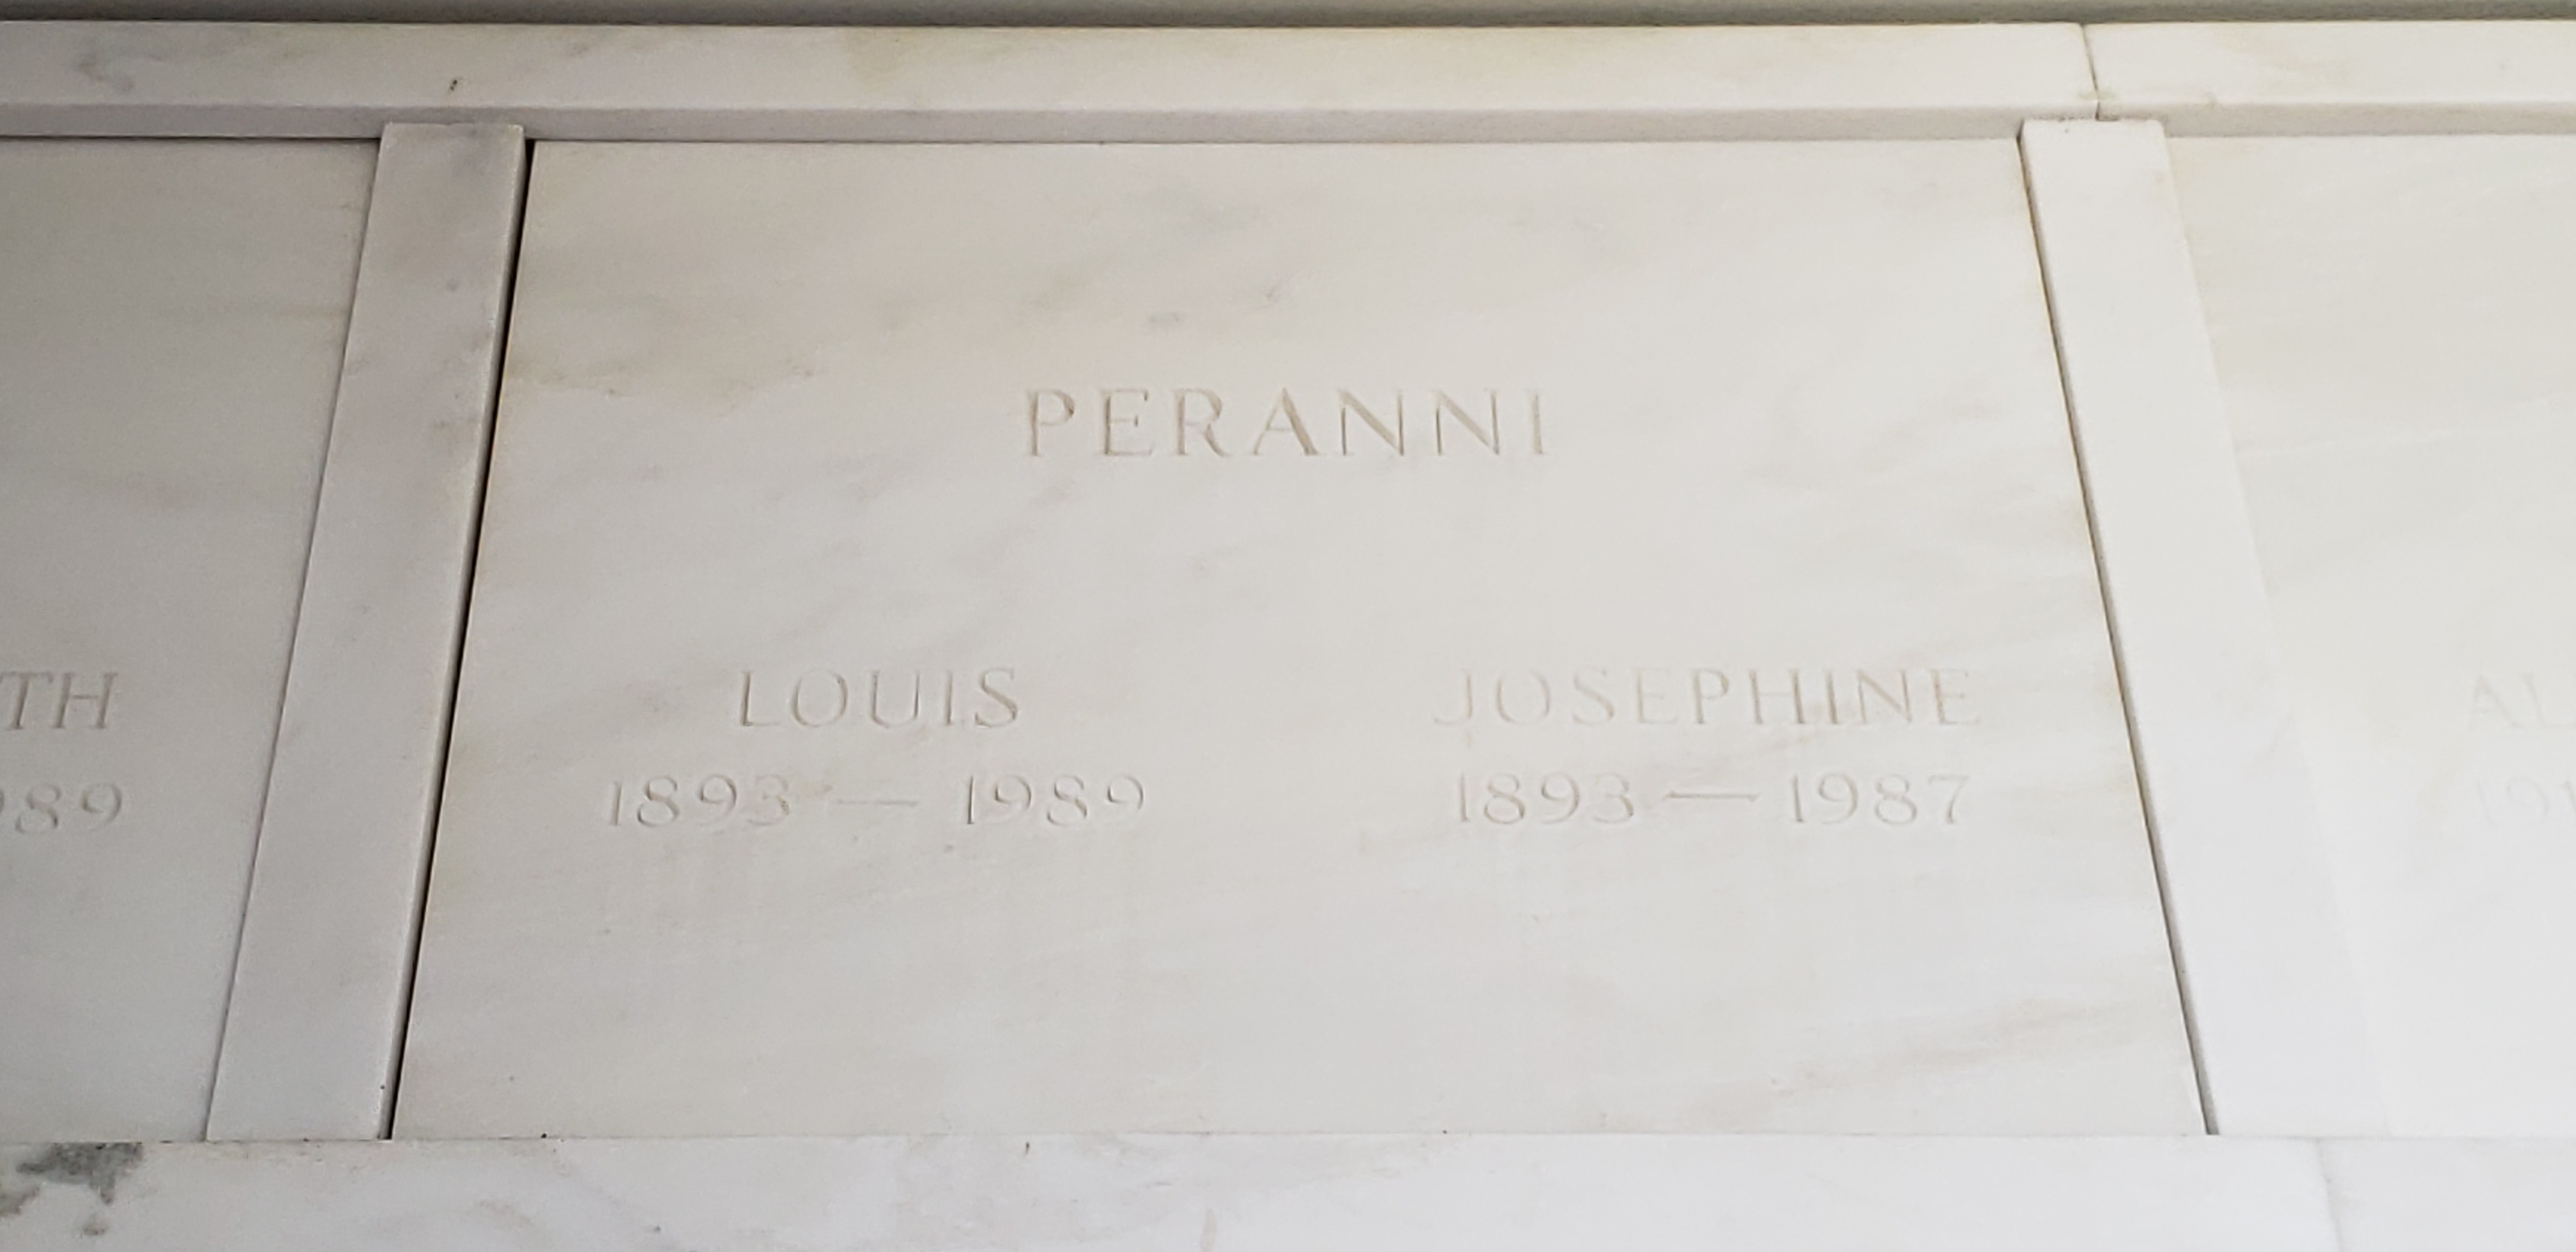 Louis Peranni